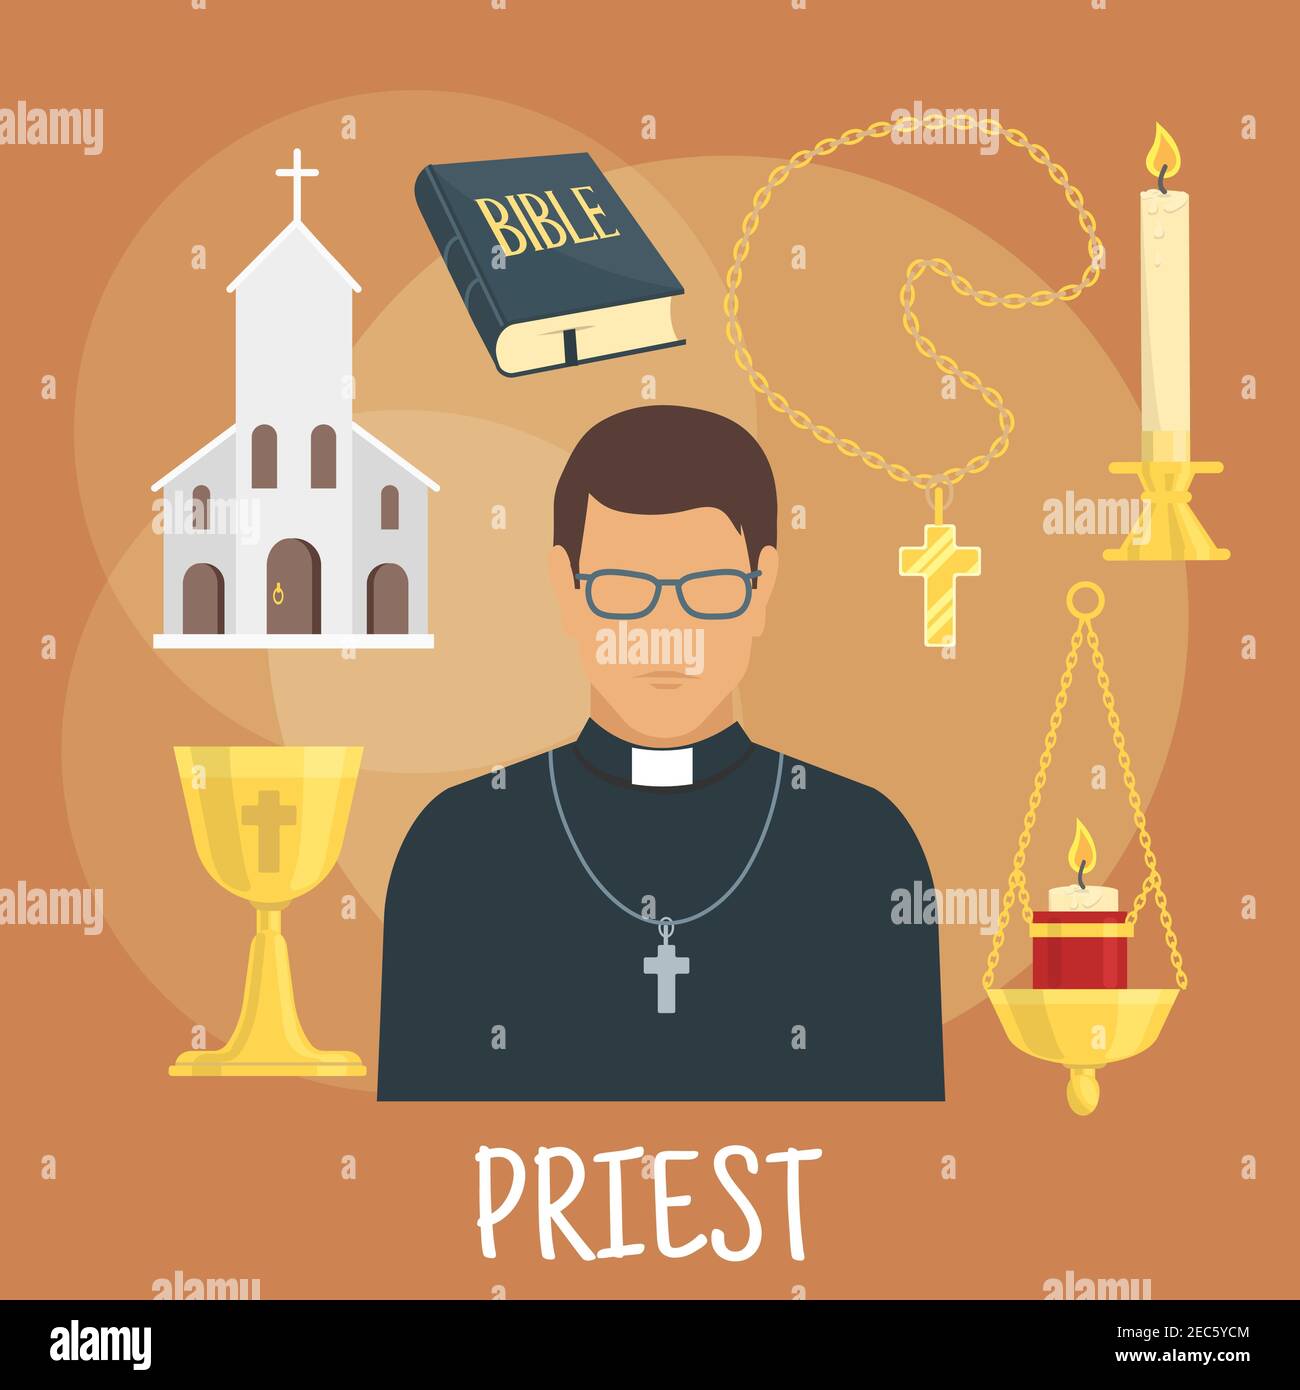 Icona giovane prete cattolico che indossa cassock nero, bicchieri e croce con simboli piatti della costruzione della chiesa, la Bibbia, coppa d'oro e candelabri con c Illustrazione Vettoriale